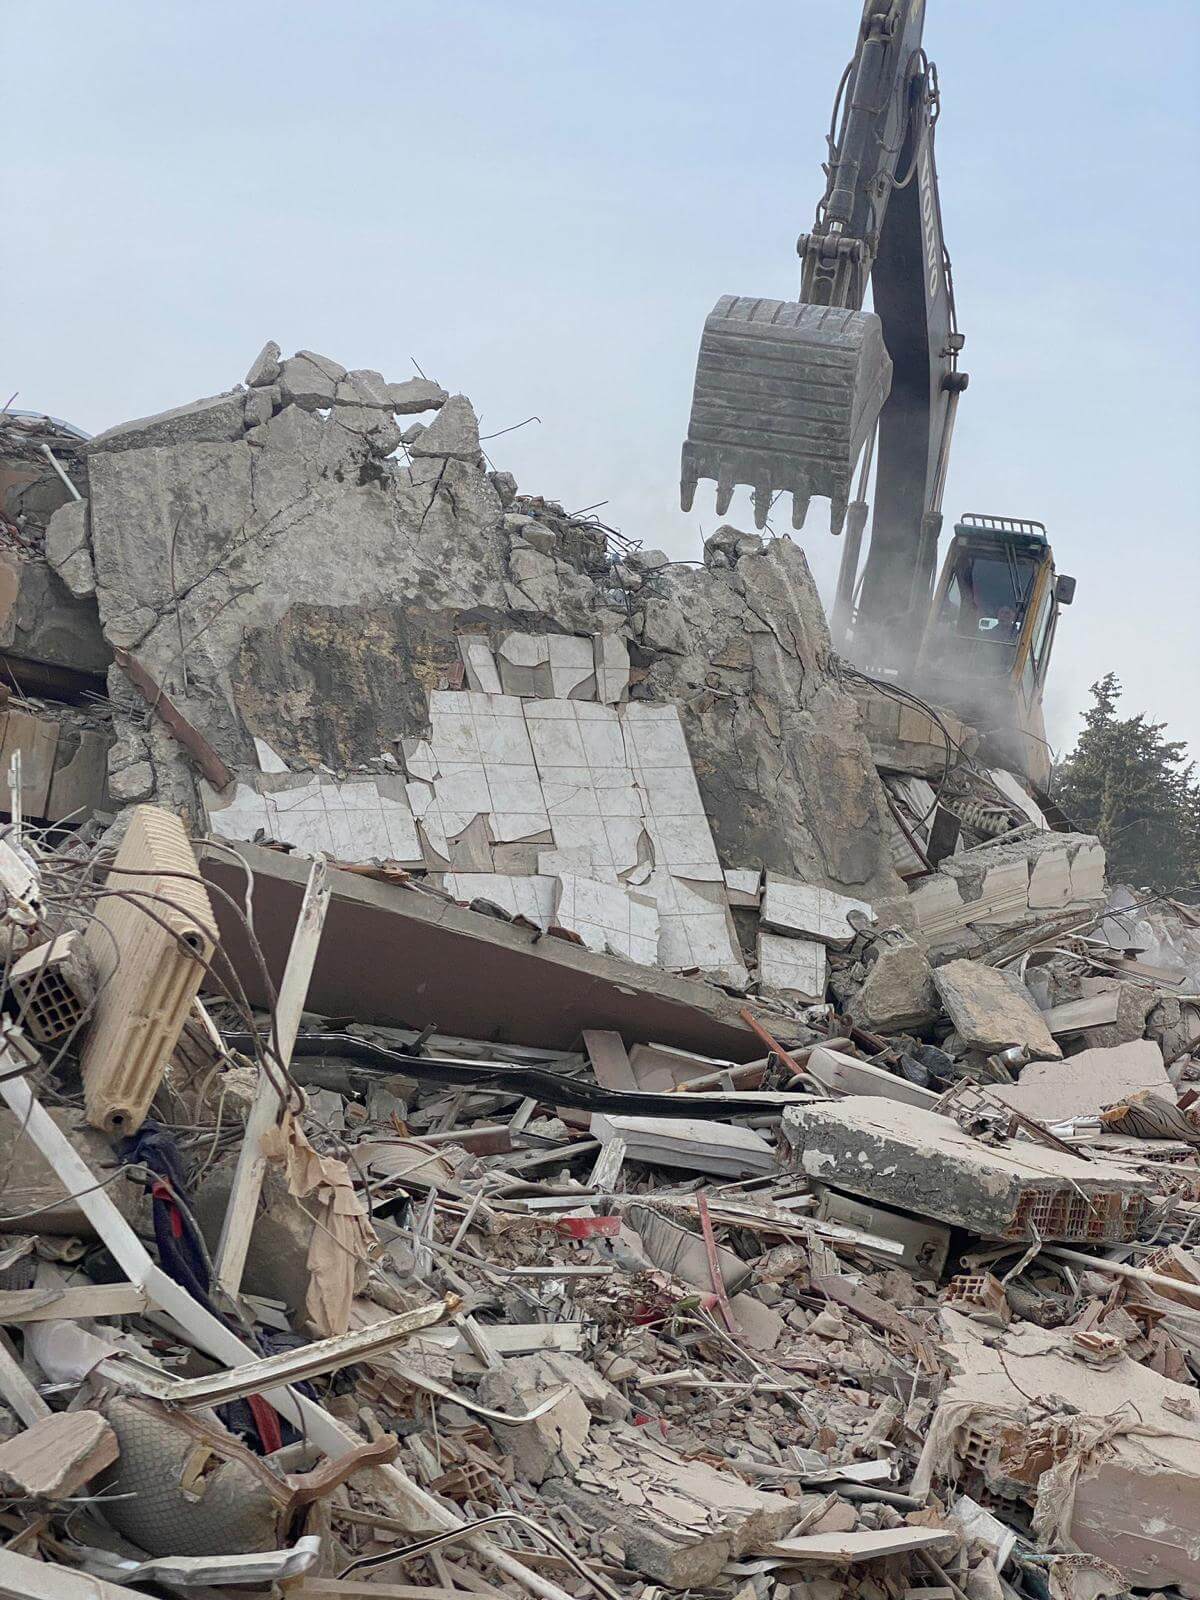 Stiftung der Brüdergemeinden Katastrophenhilfe Erdbeben Türkei Syrien Spenden Hilfe humanitäre Unterstützung Not Leid